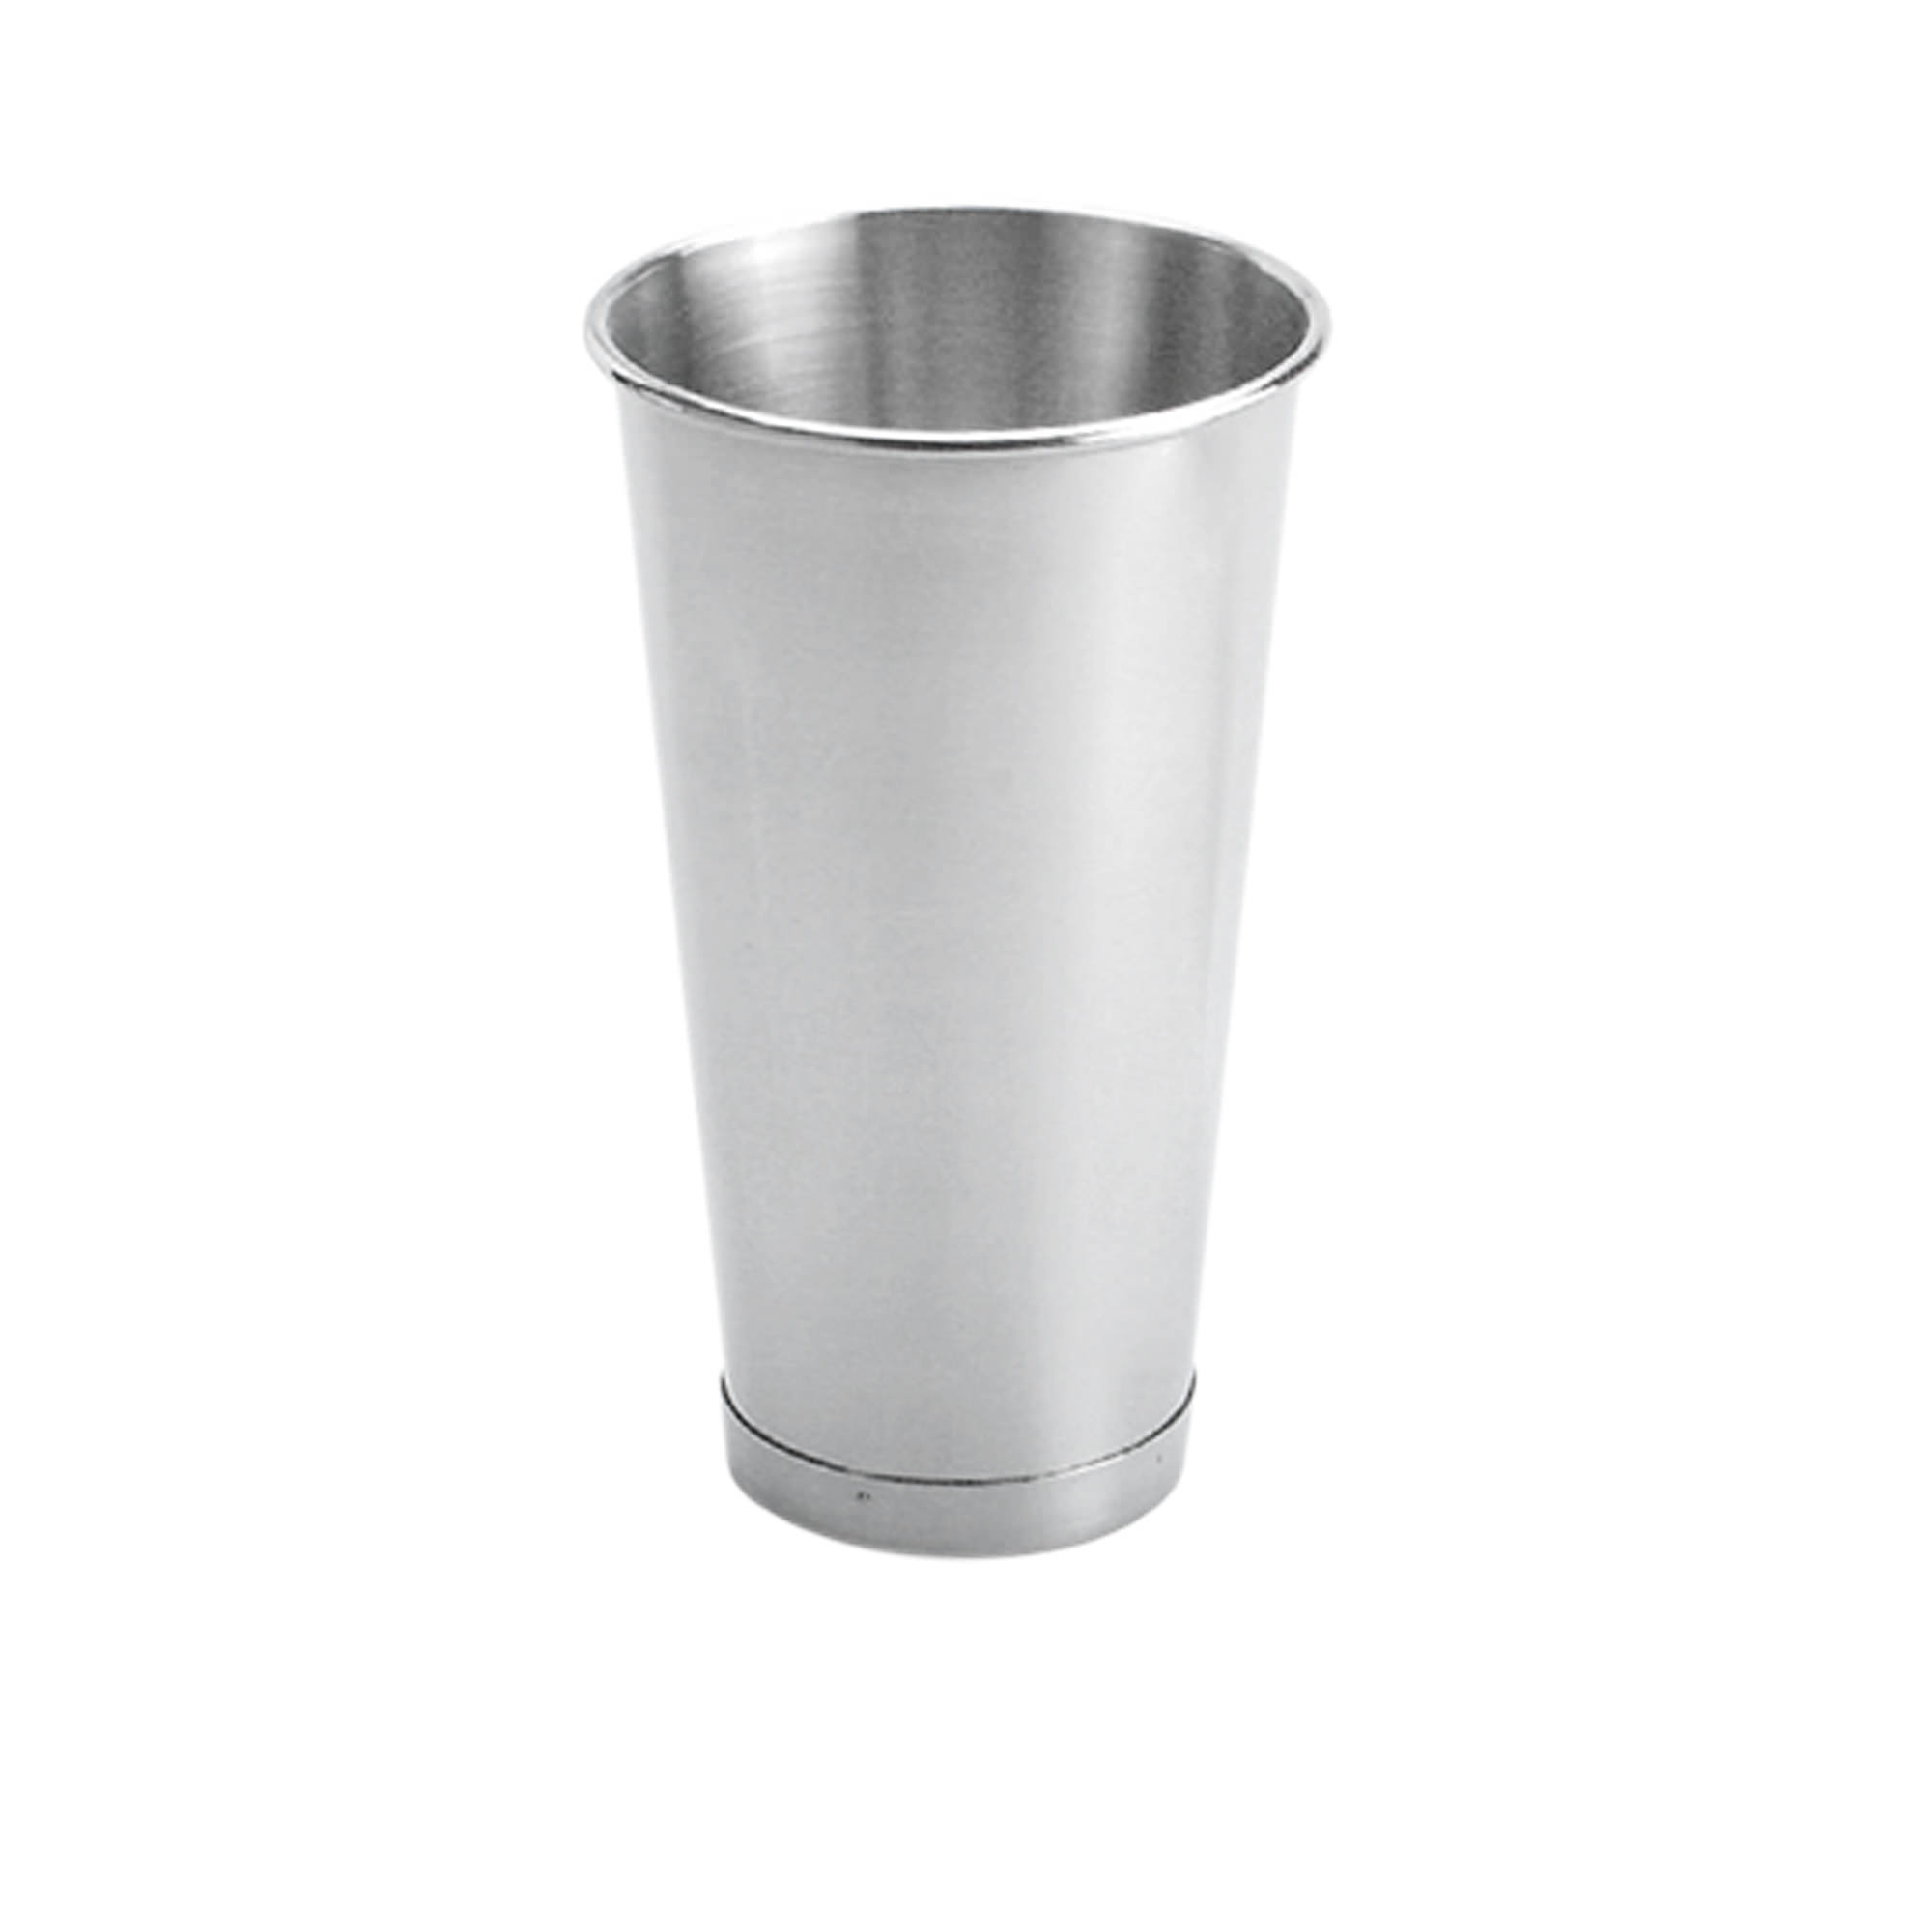 Chef Inox Stainless Steel Milkshake Cup Image 1